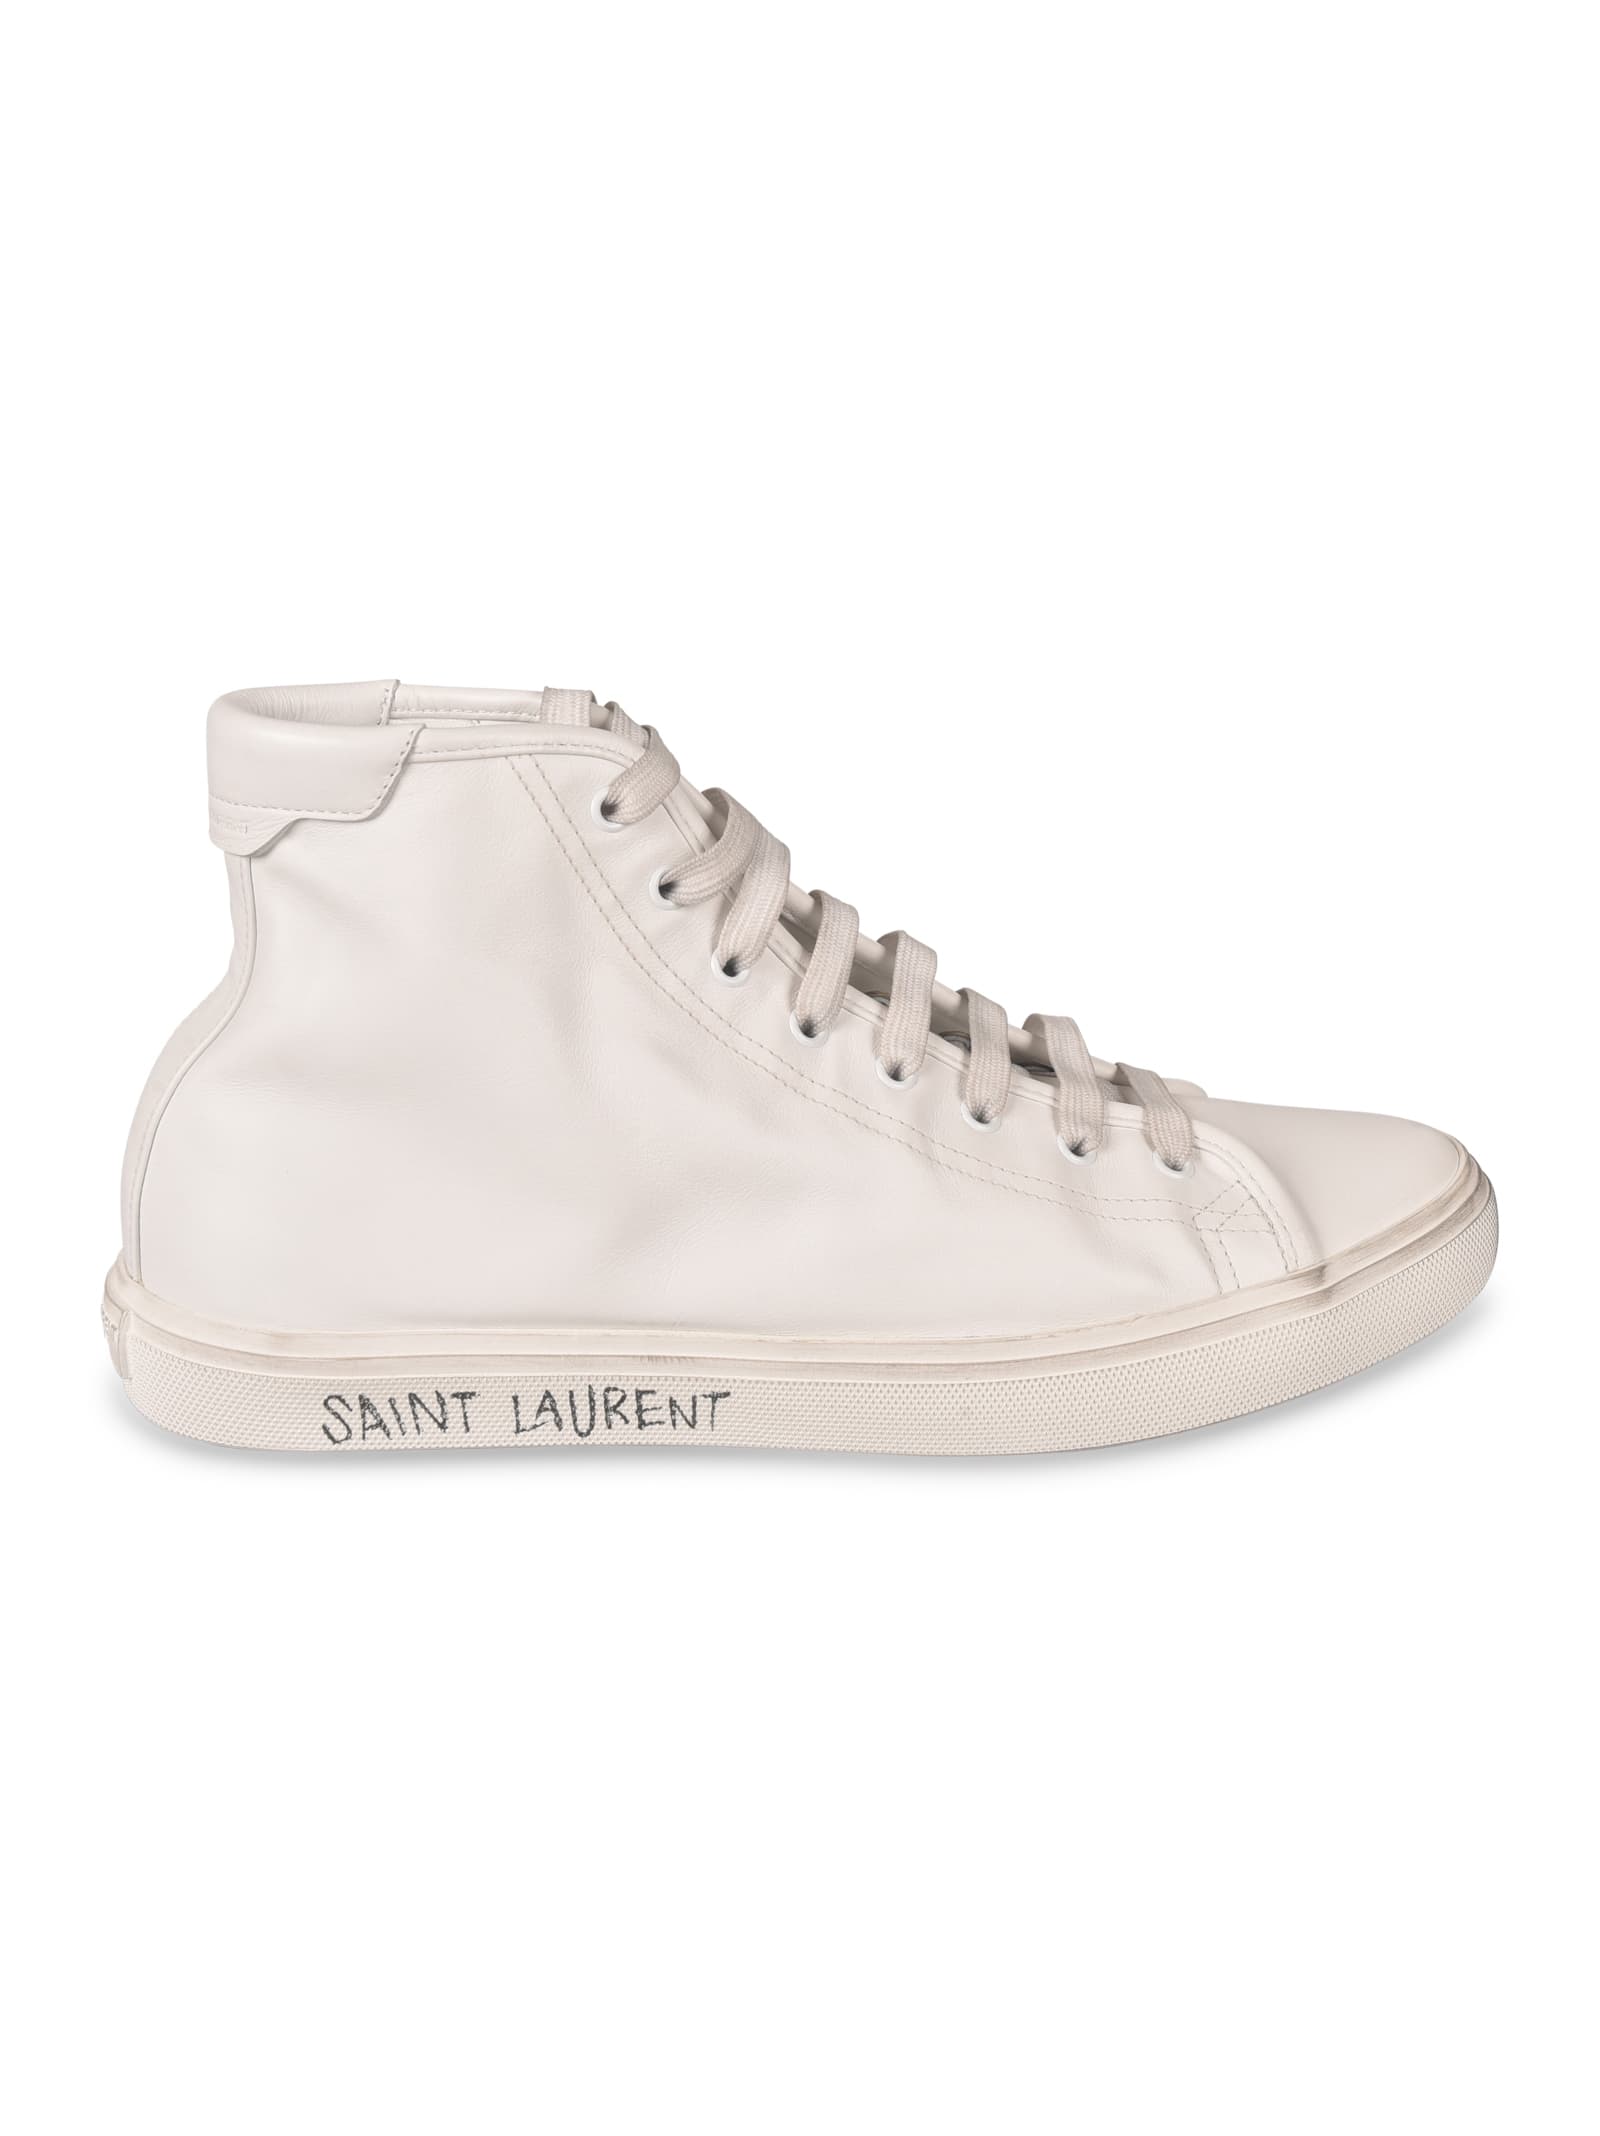 Saint Laurent Malibu 05 Sneakers